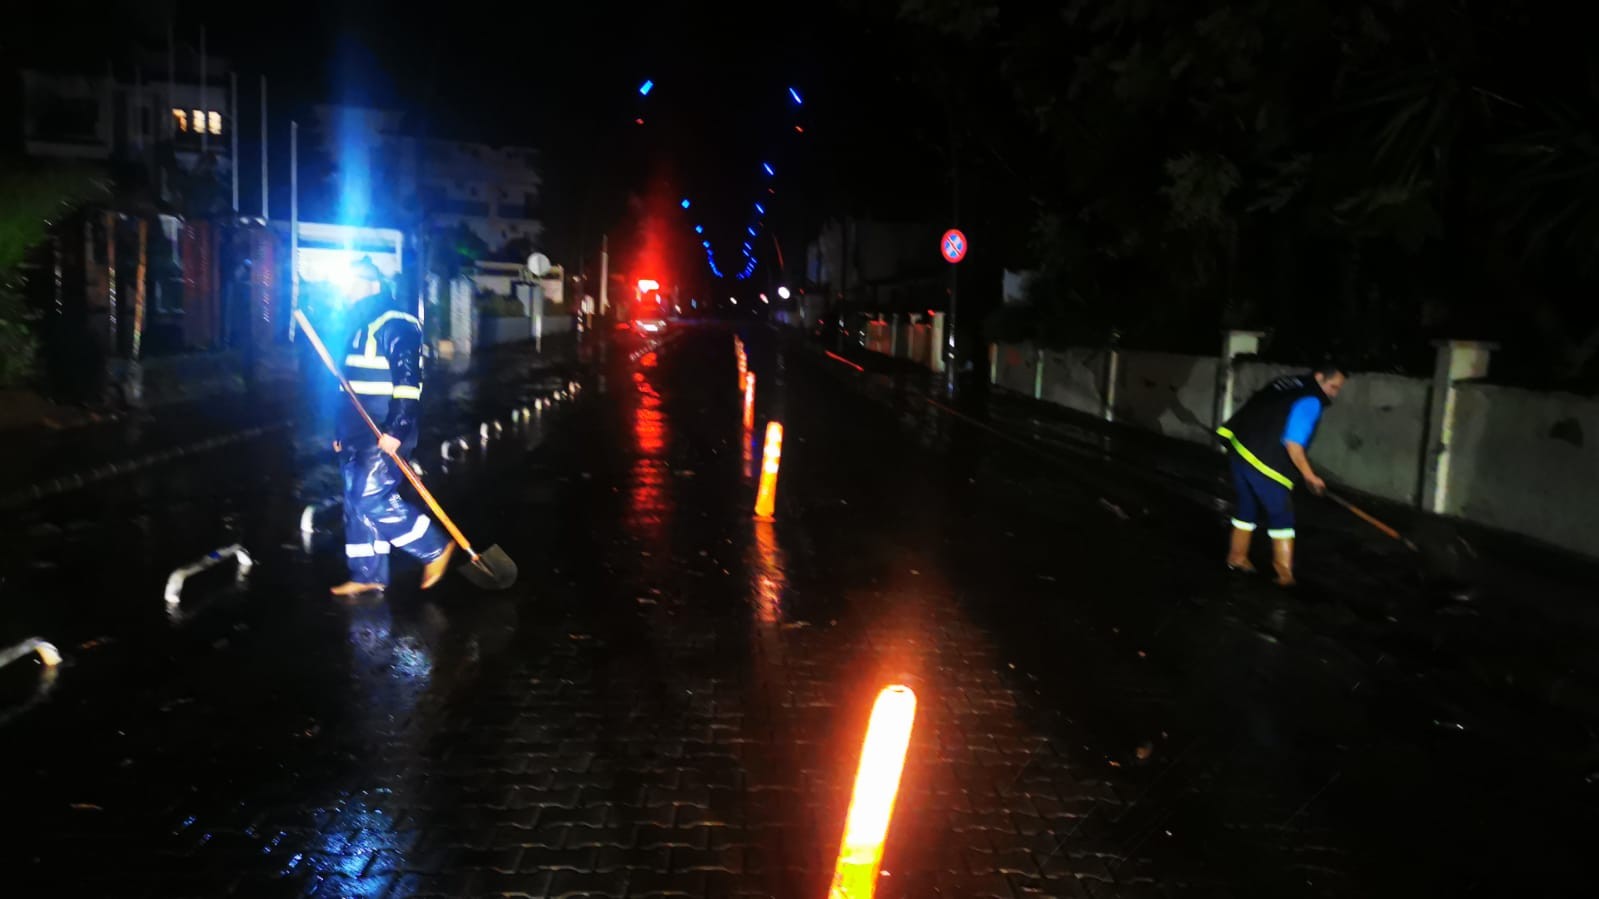 Marmaris’te sağanak yağış sonrası cadde ve sokaklar sele döndü #mugla